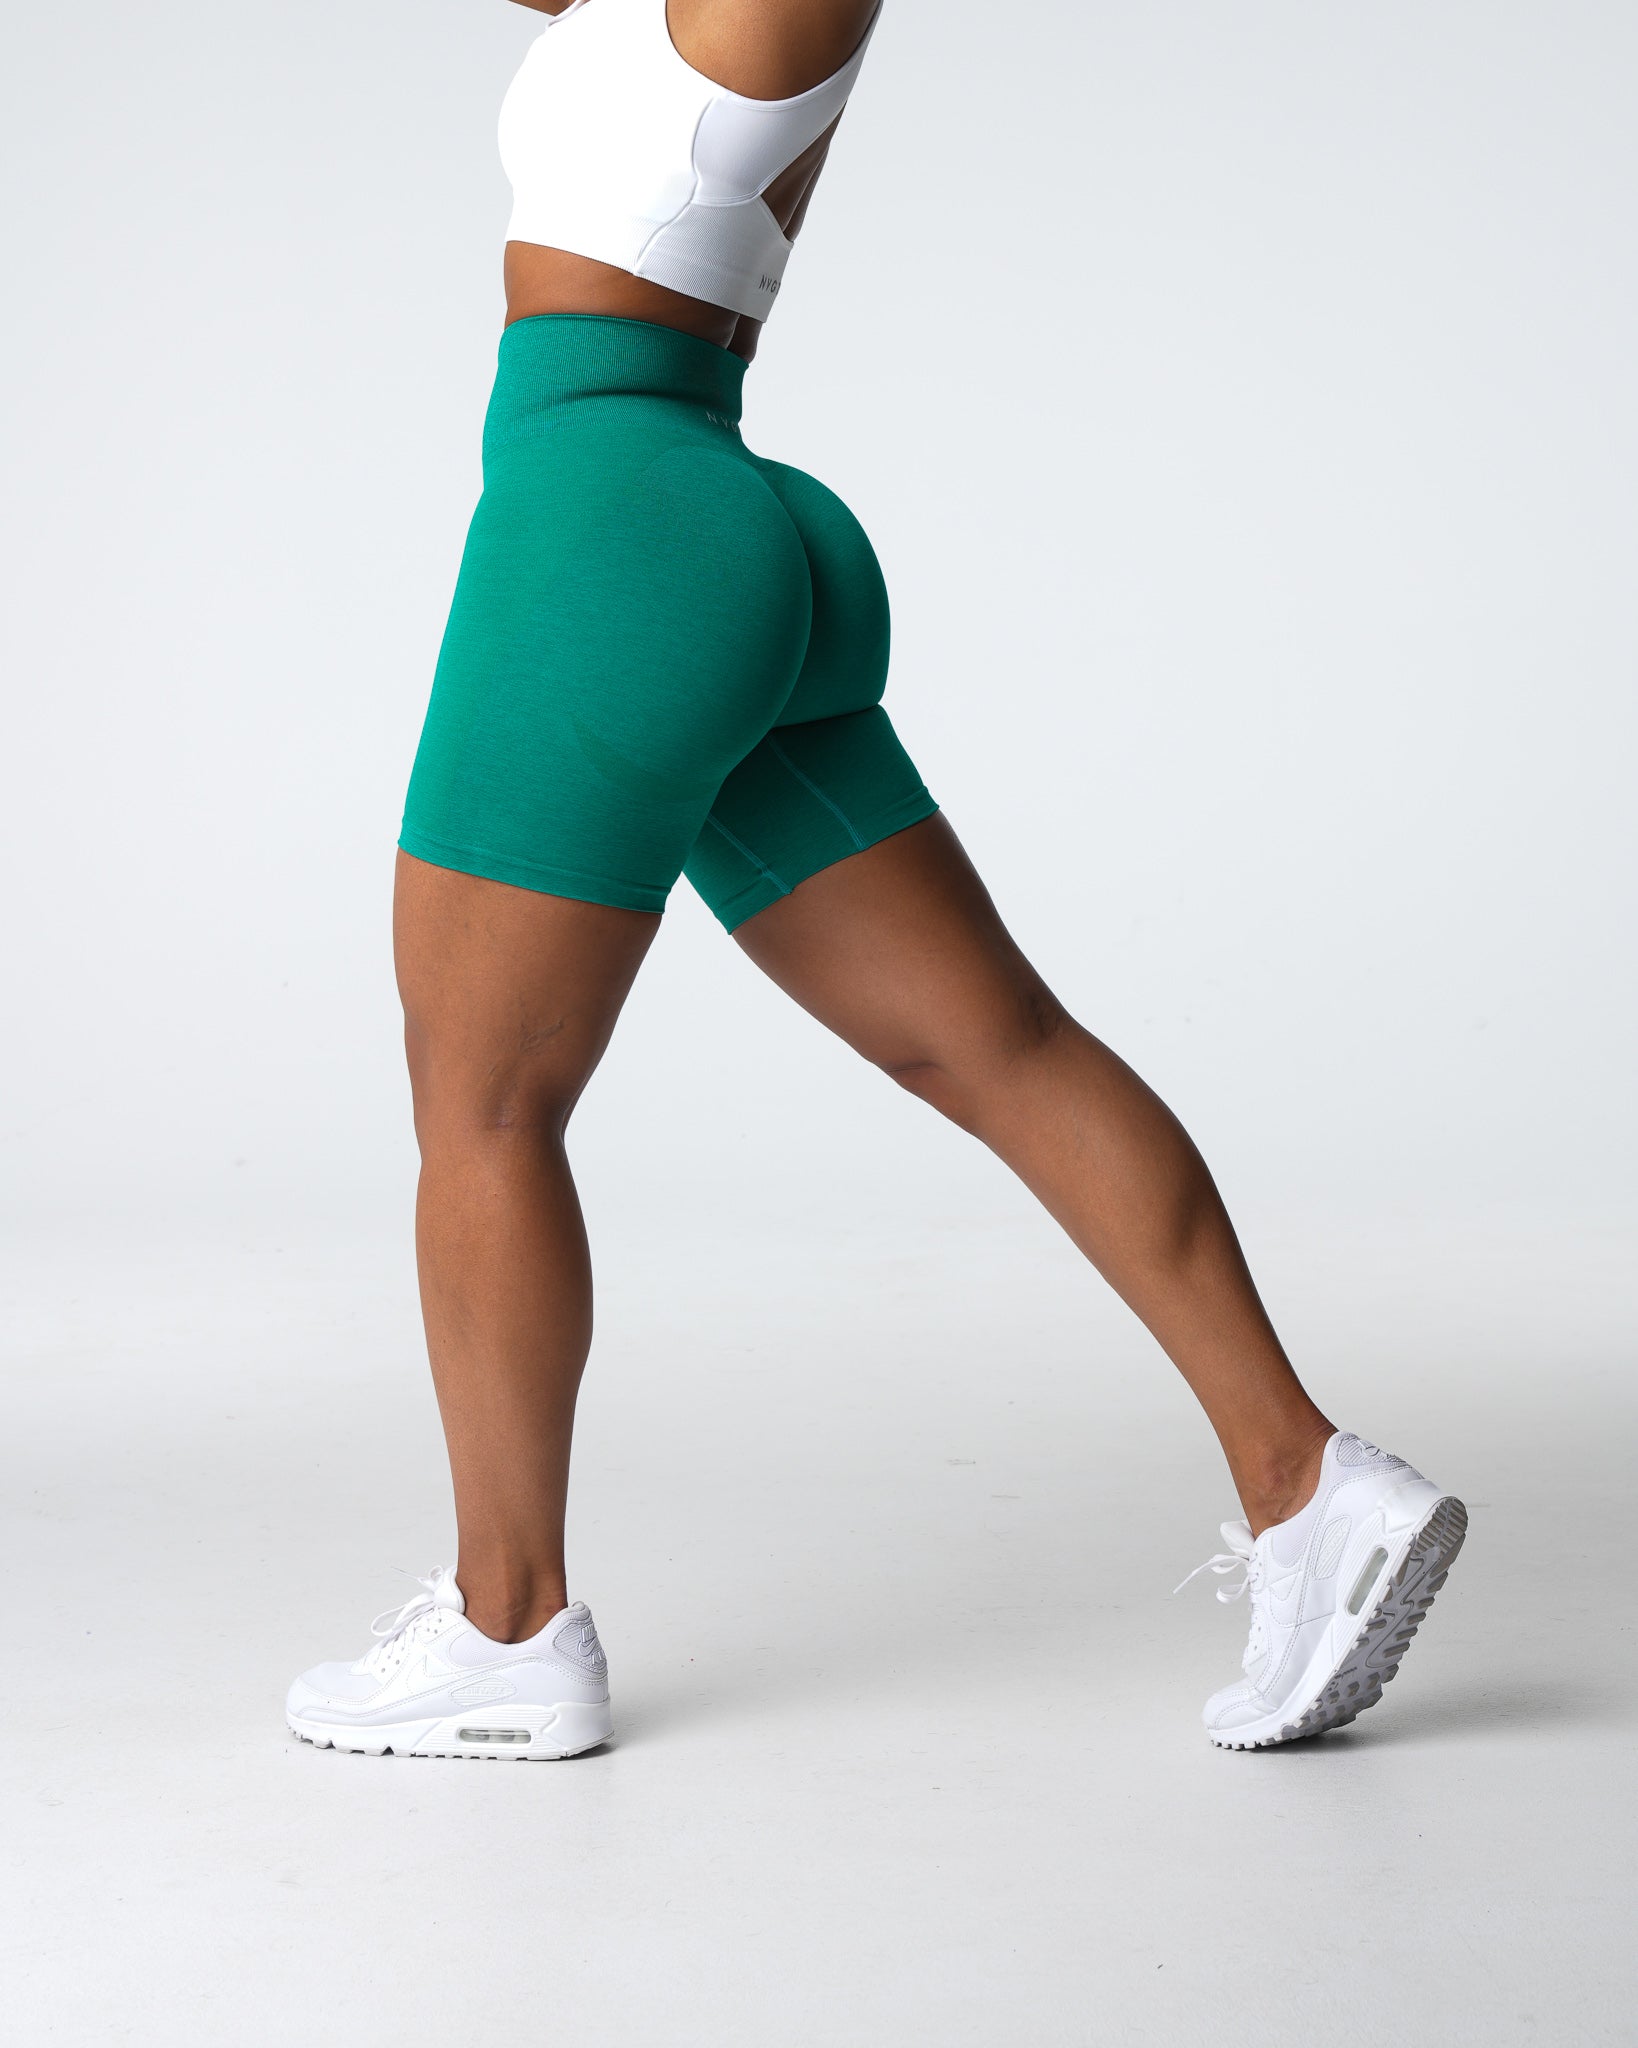 Jade Contour 2.0 Seamless Shorts